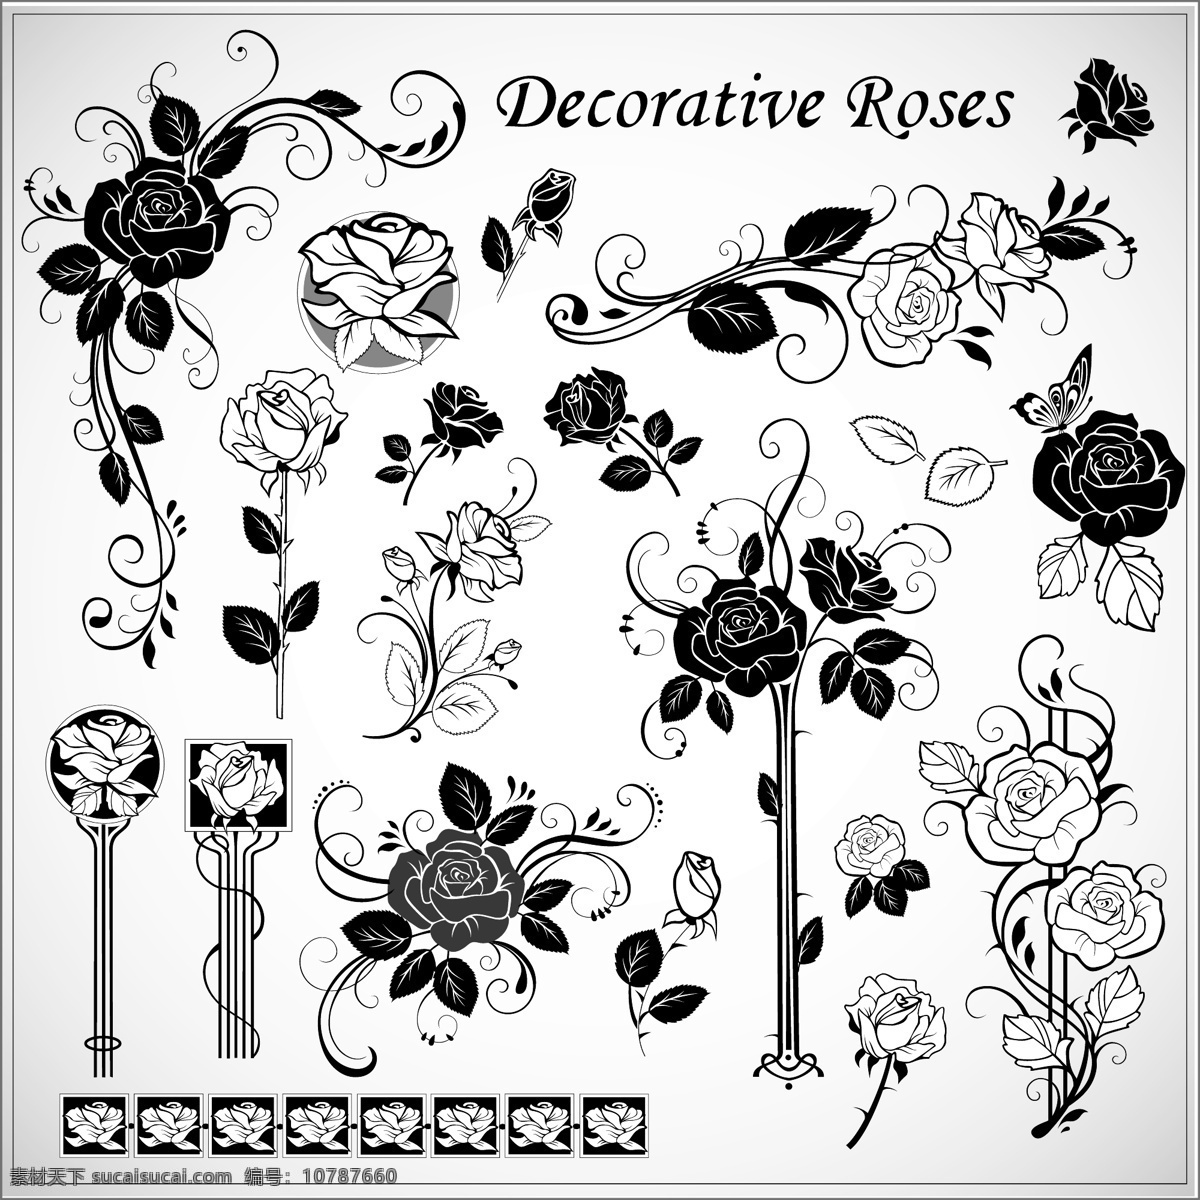 装饰 玫瑰 图案 矢量 装饰的玫瑰 玫瑰的图案 花纹 边框 自由 背景 下 复古 矢量图 花纹花边